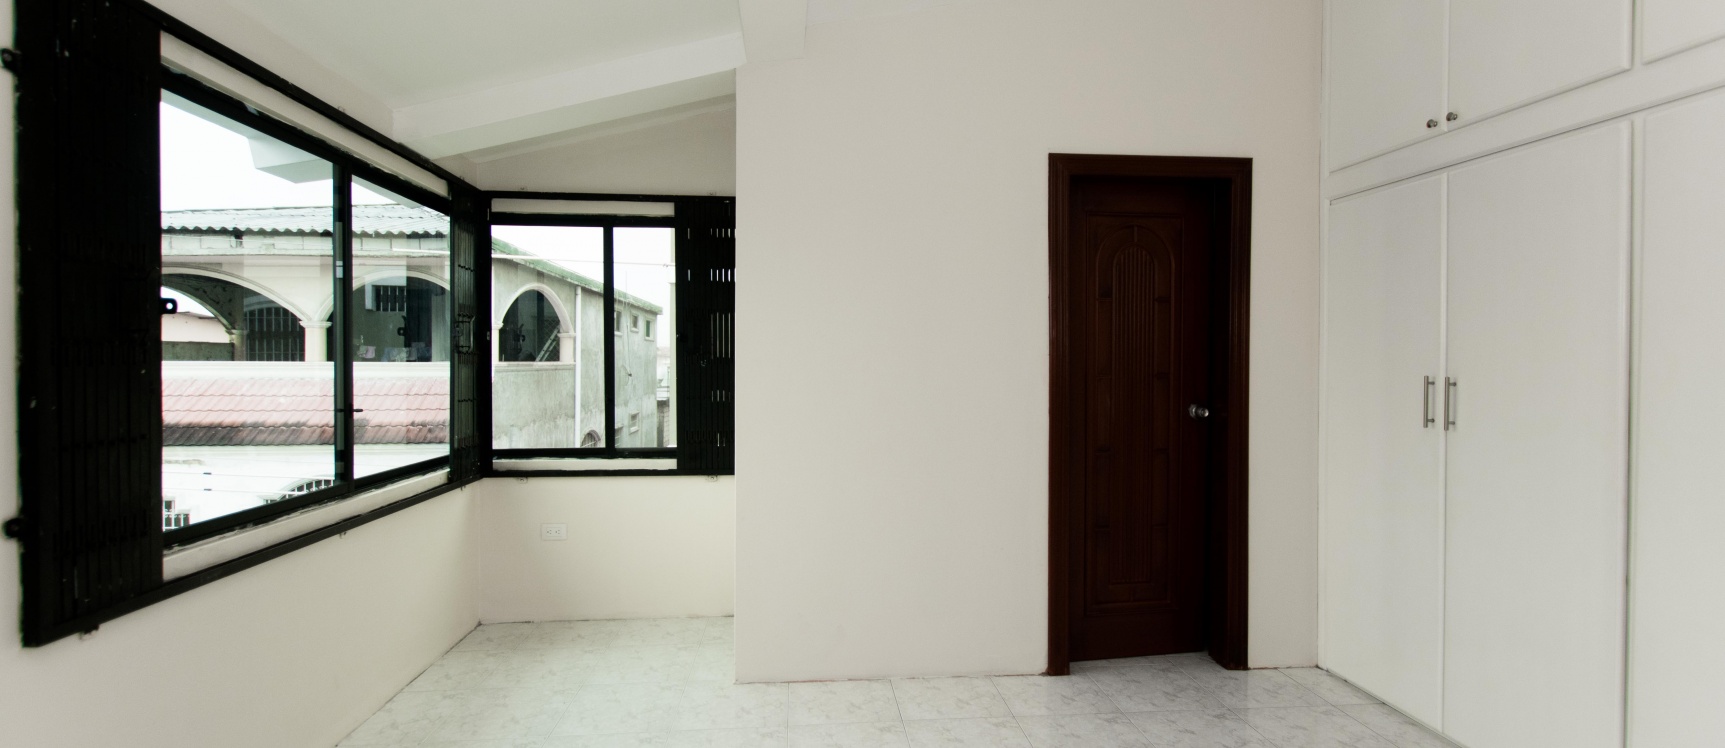 GeoBienes - Casa en venta ubicada en urbanización Acuarela del Rio - Plusvalia Guayaquil Casas de venta y alquiler Inmobiliaria Ecuador